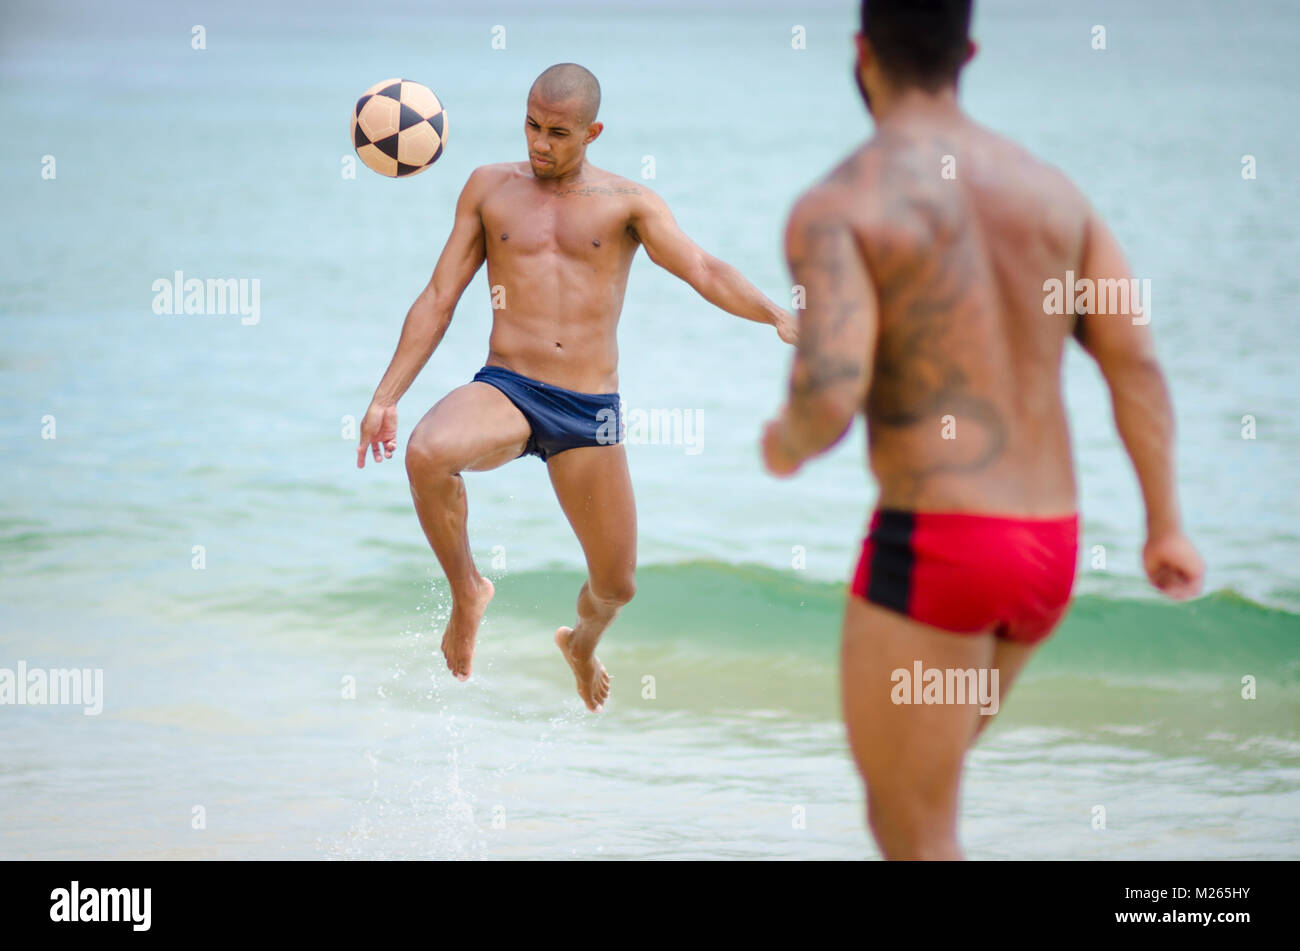 RIO DE JANEIRO - März 4, 2017 : Ein paar jungen brasilianischen Männer spielen ein Spiel der Kick-ups Fußball am Ufer des Itacoatiara Strand. Stockfoto